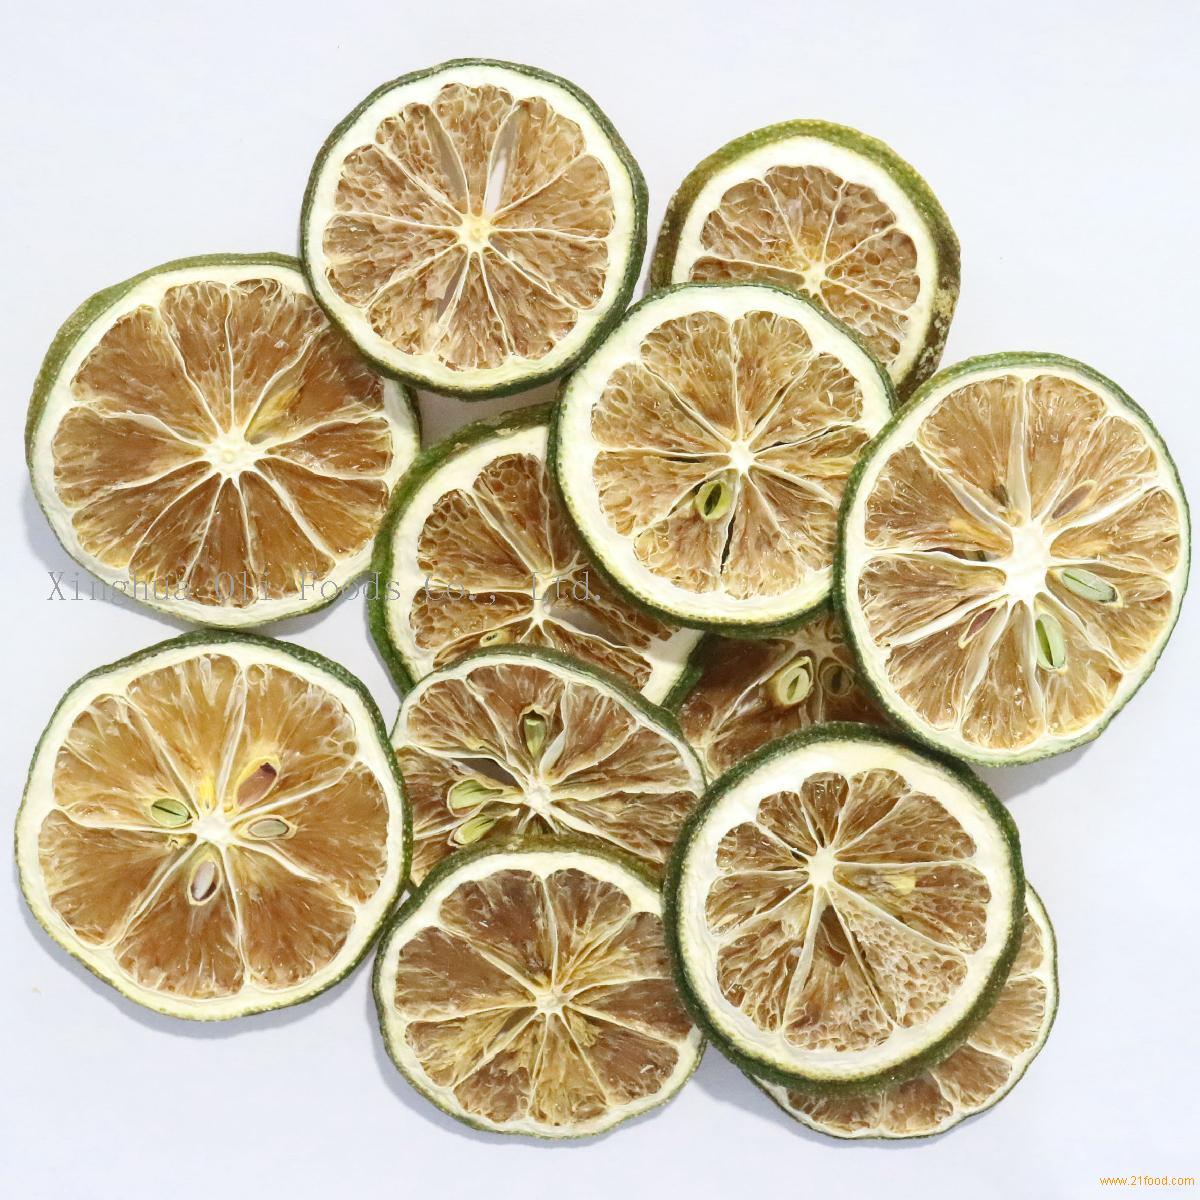 green lemon slice